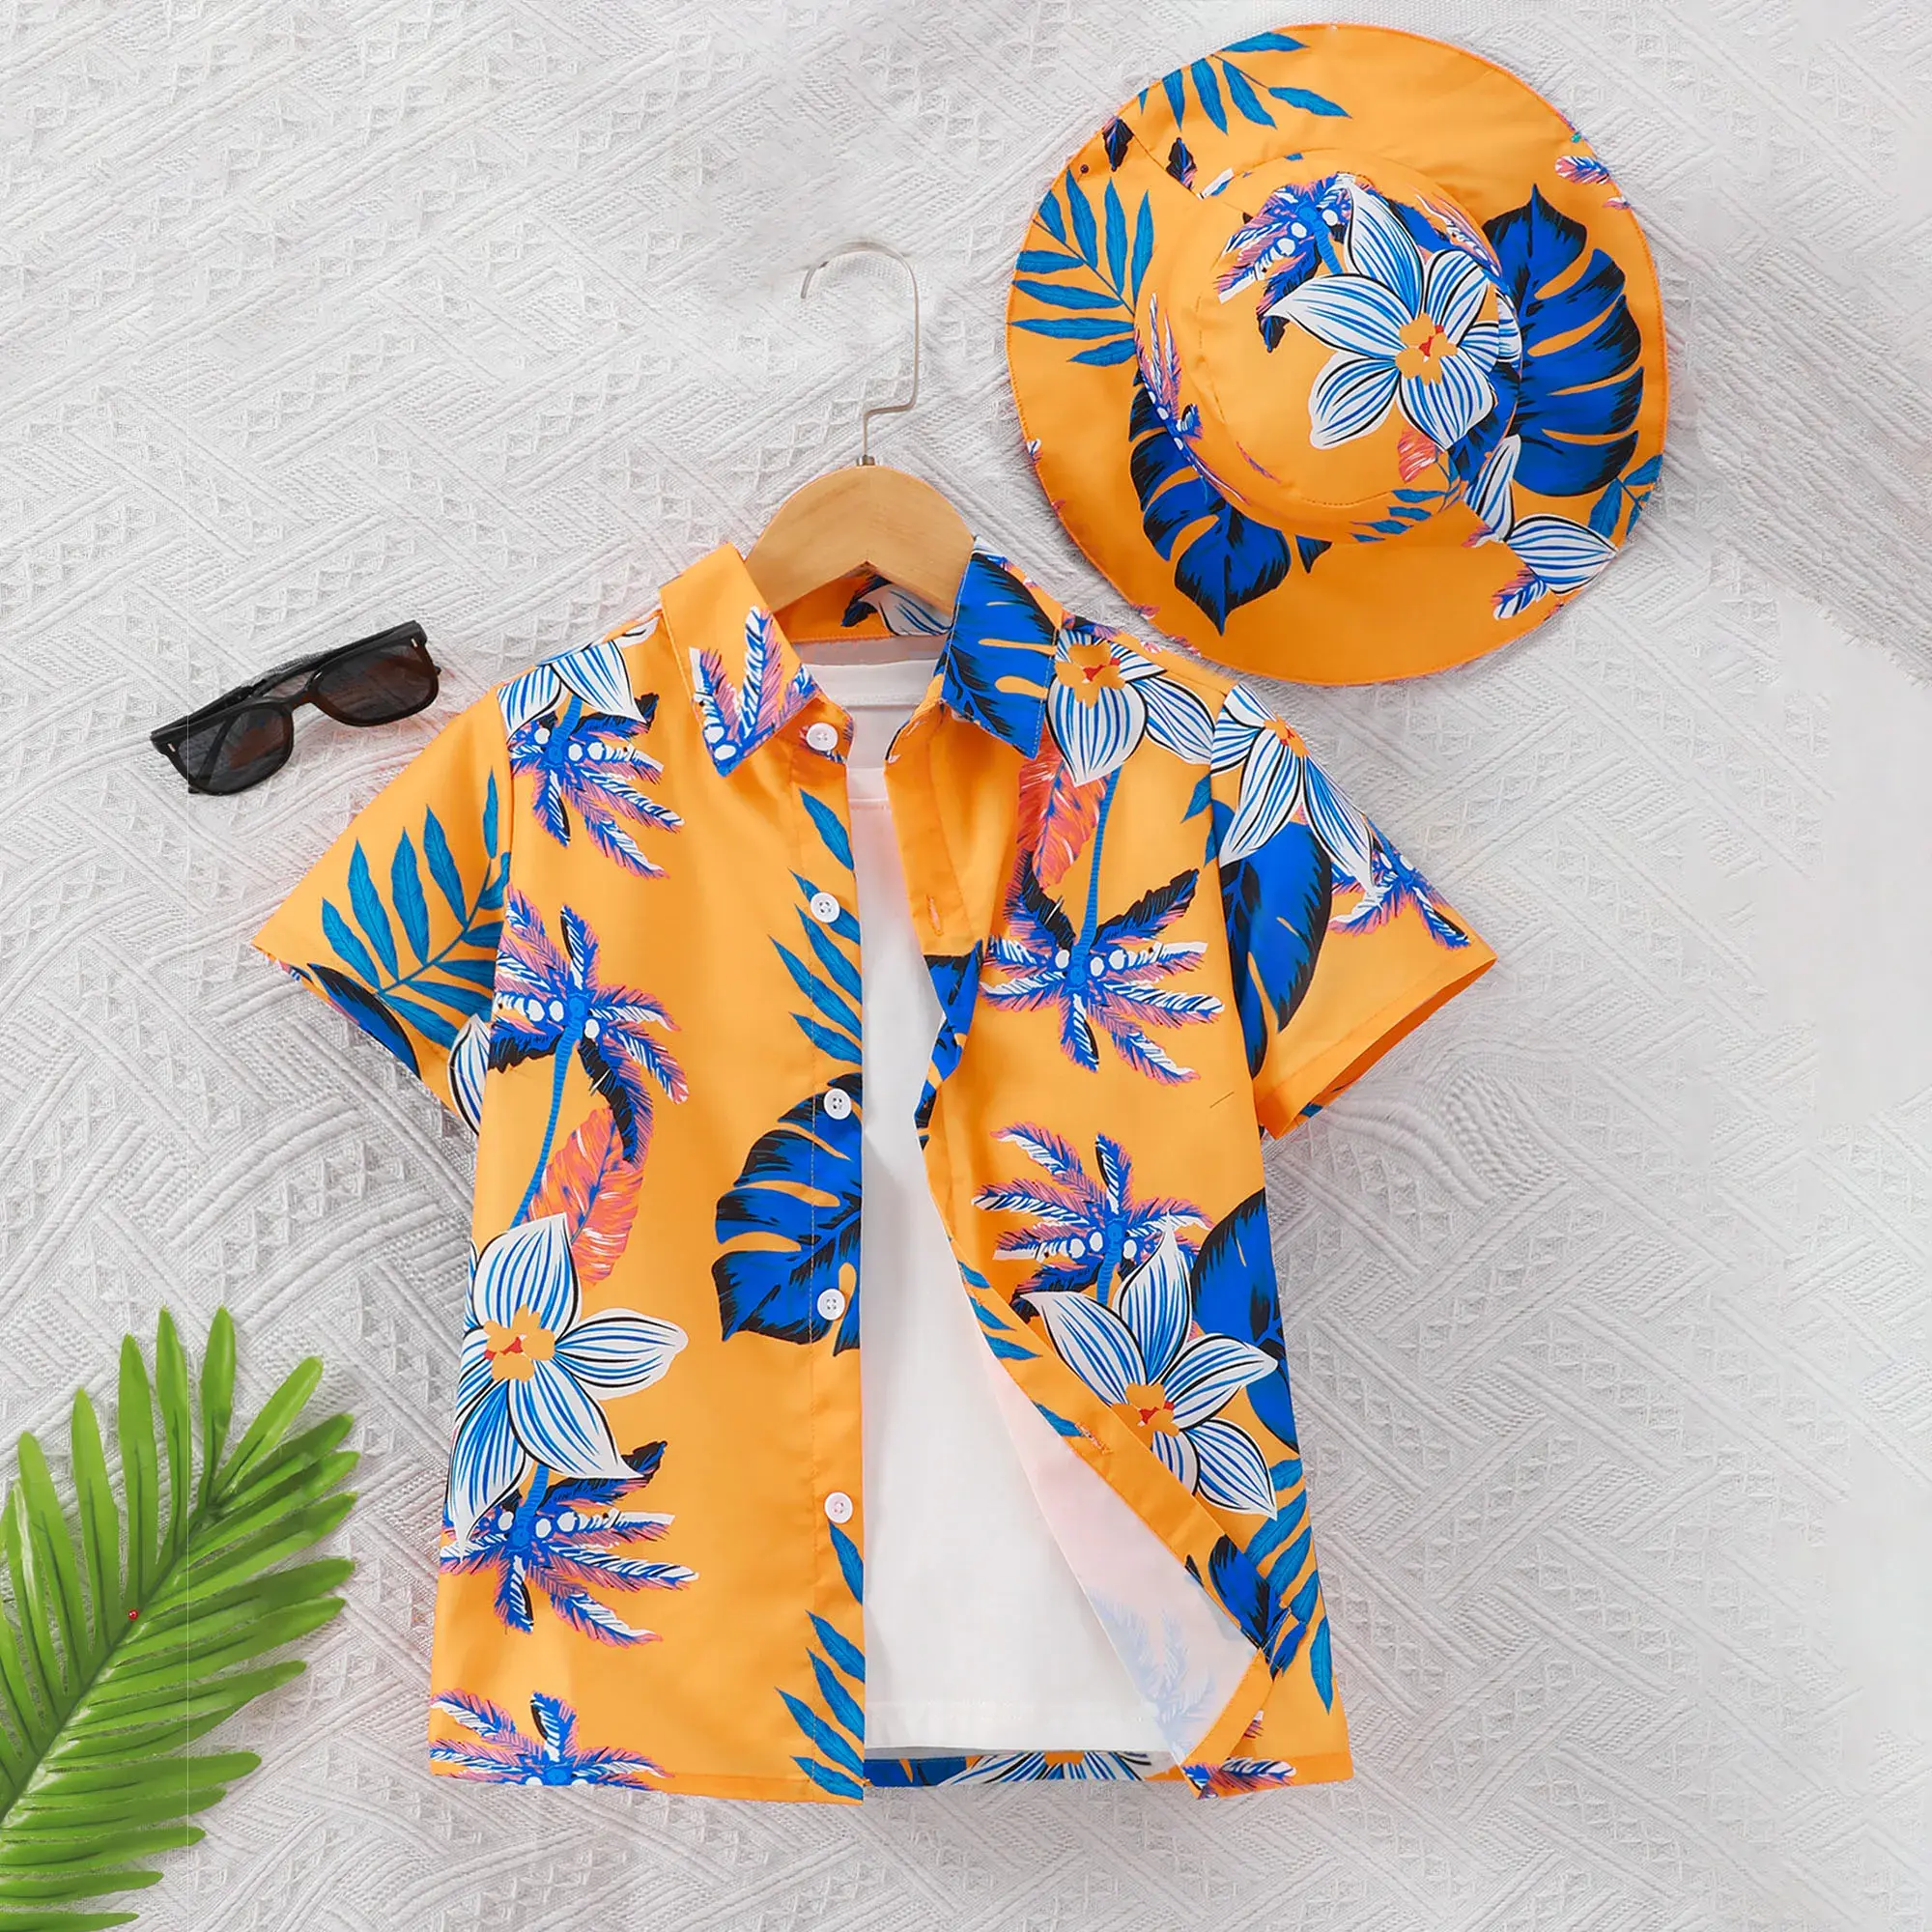 Top confortável casual de manga curta com estampa de flores e flores para meninos, camisa com chapéu estilo praia e férias, ideal para o verão